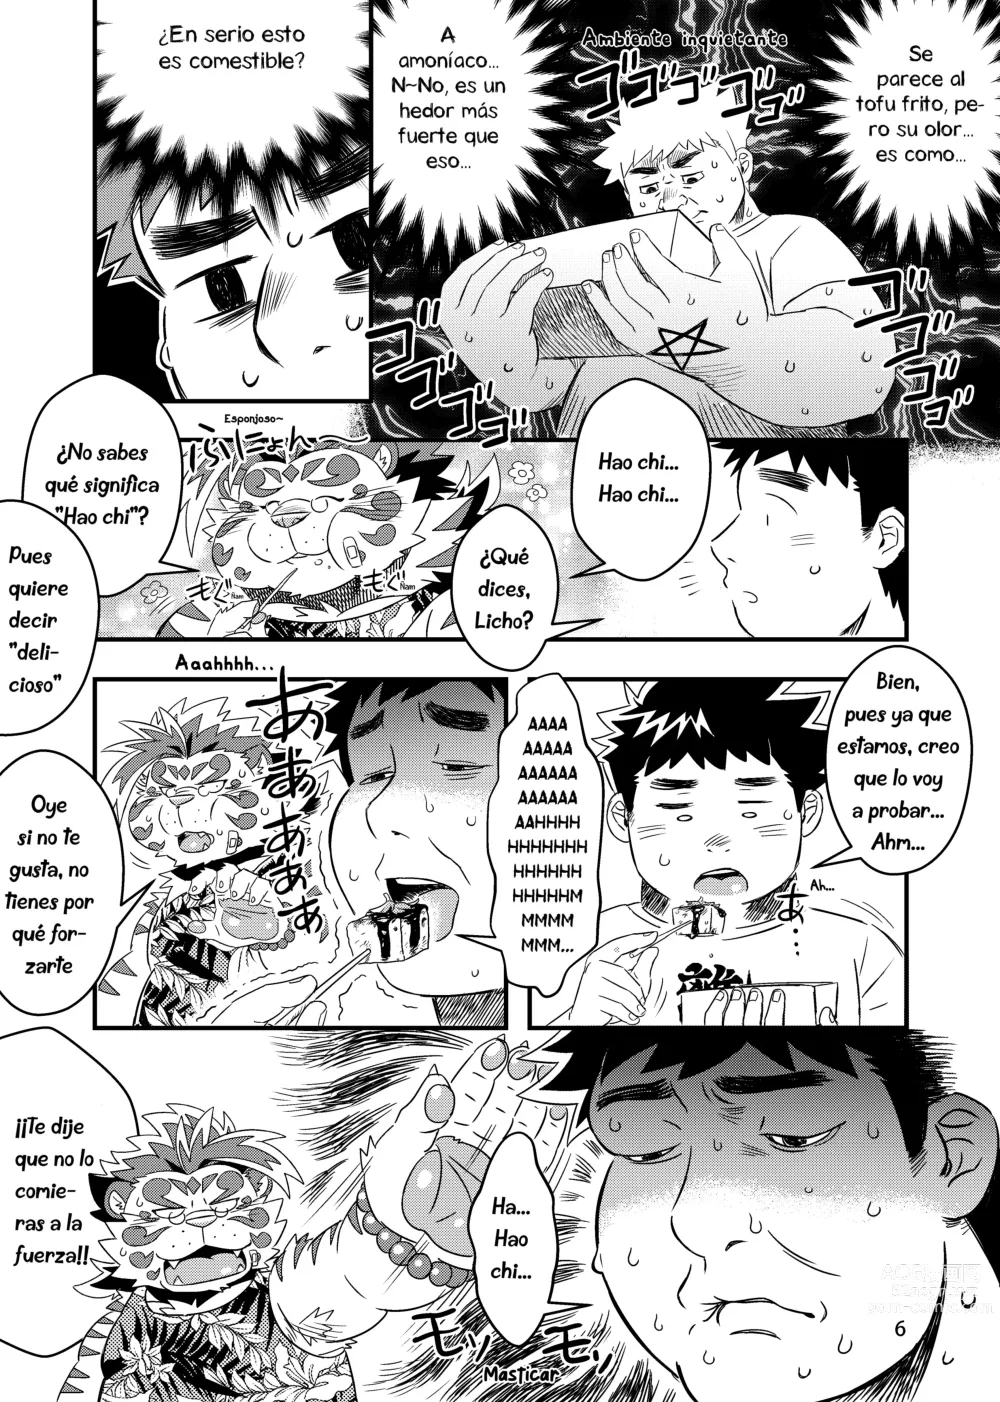 Page 9 of doujinshi ¿No es ese mi amigo Licho?